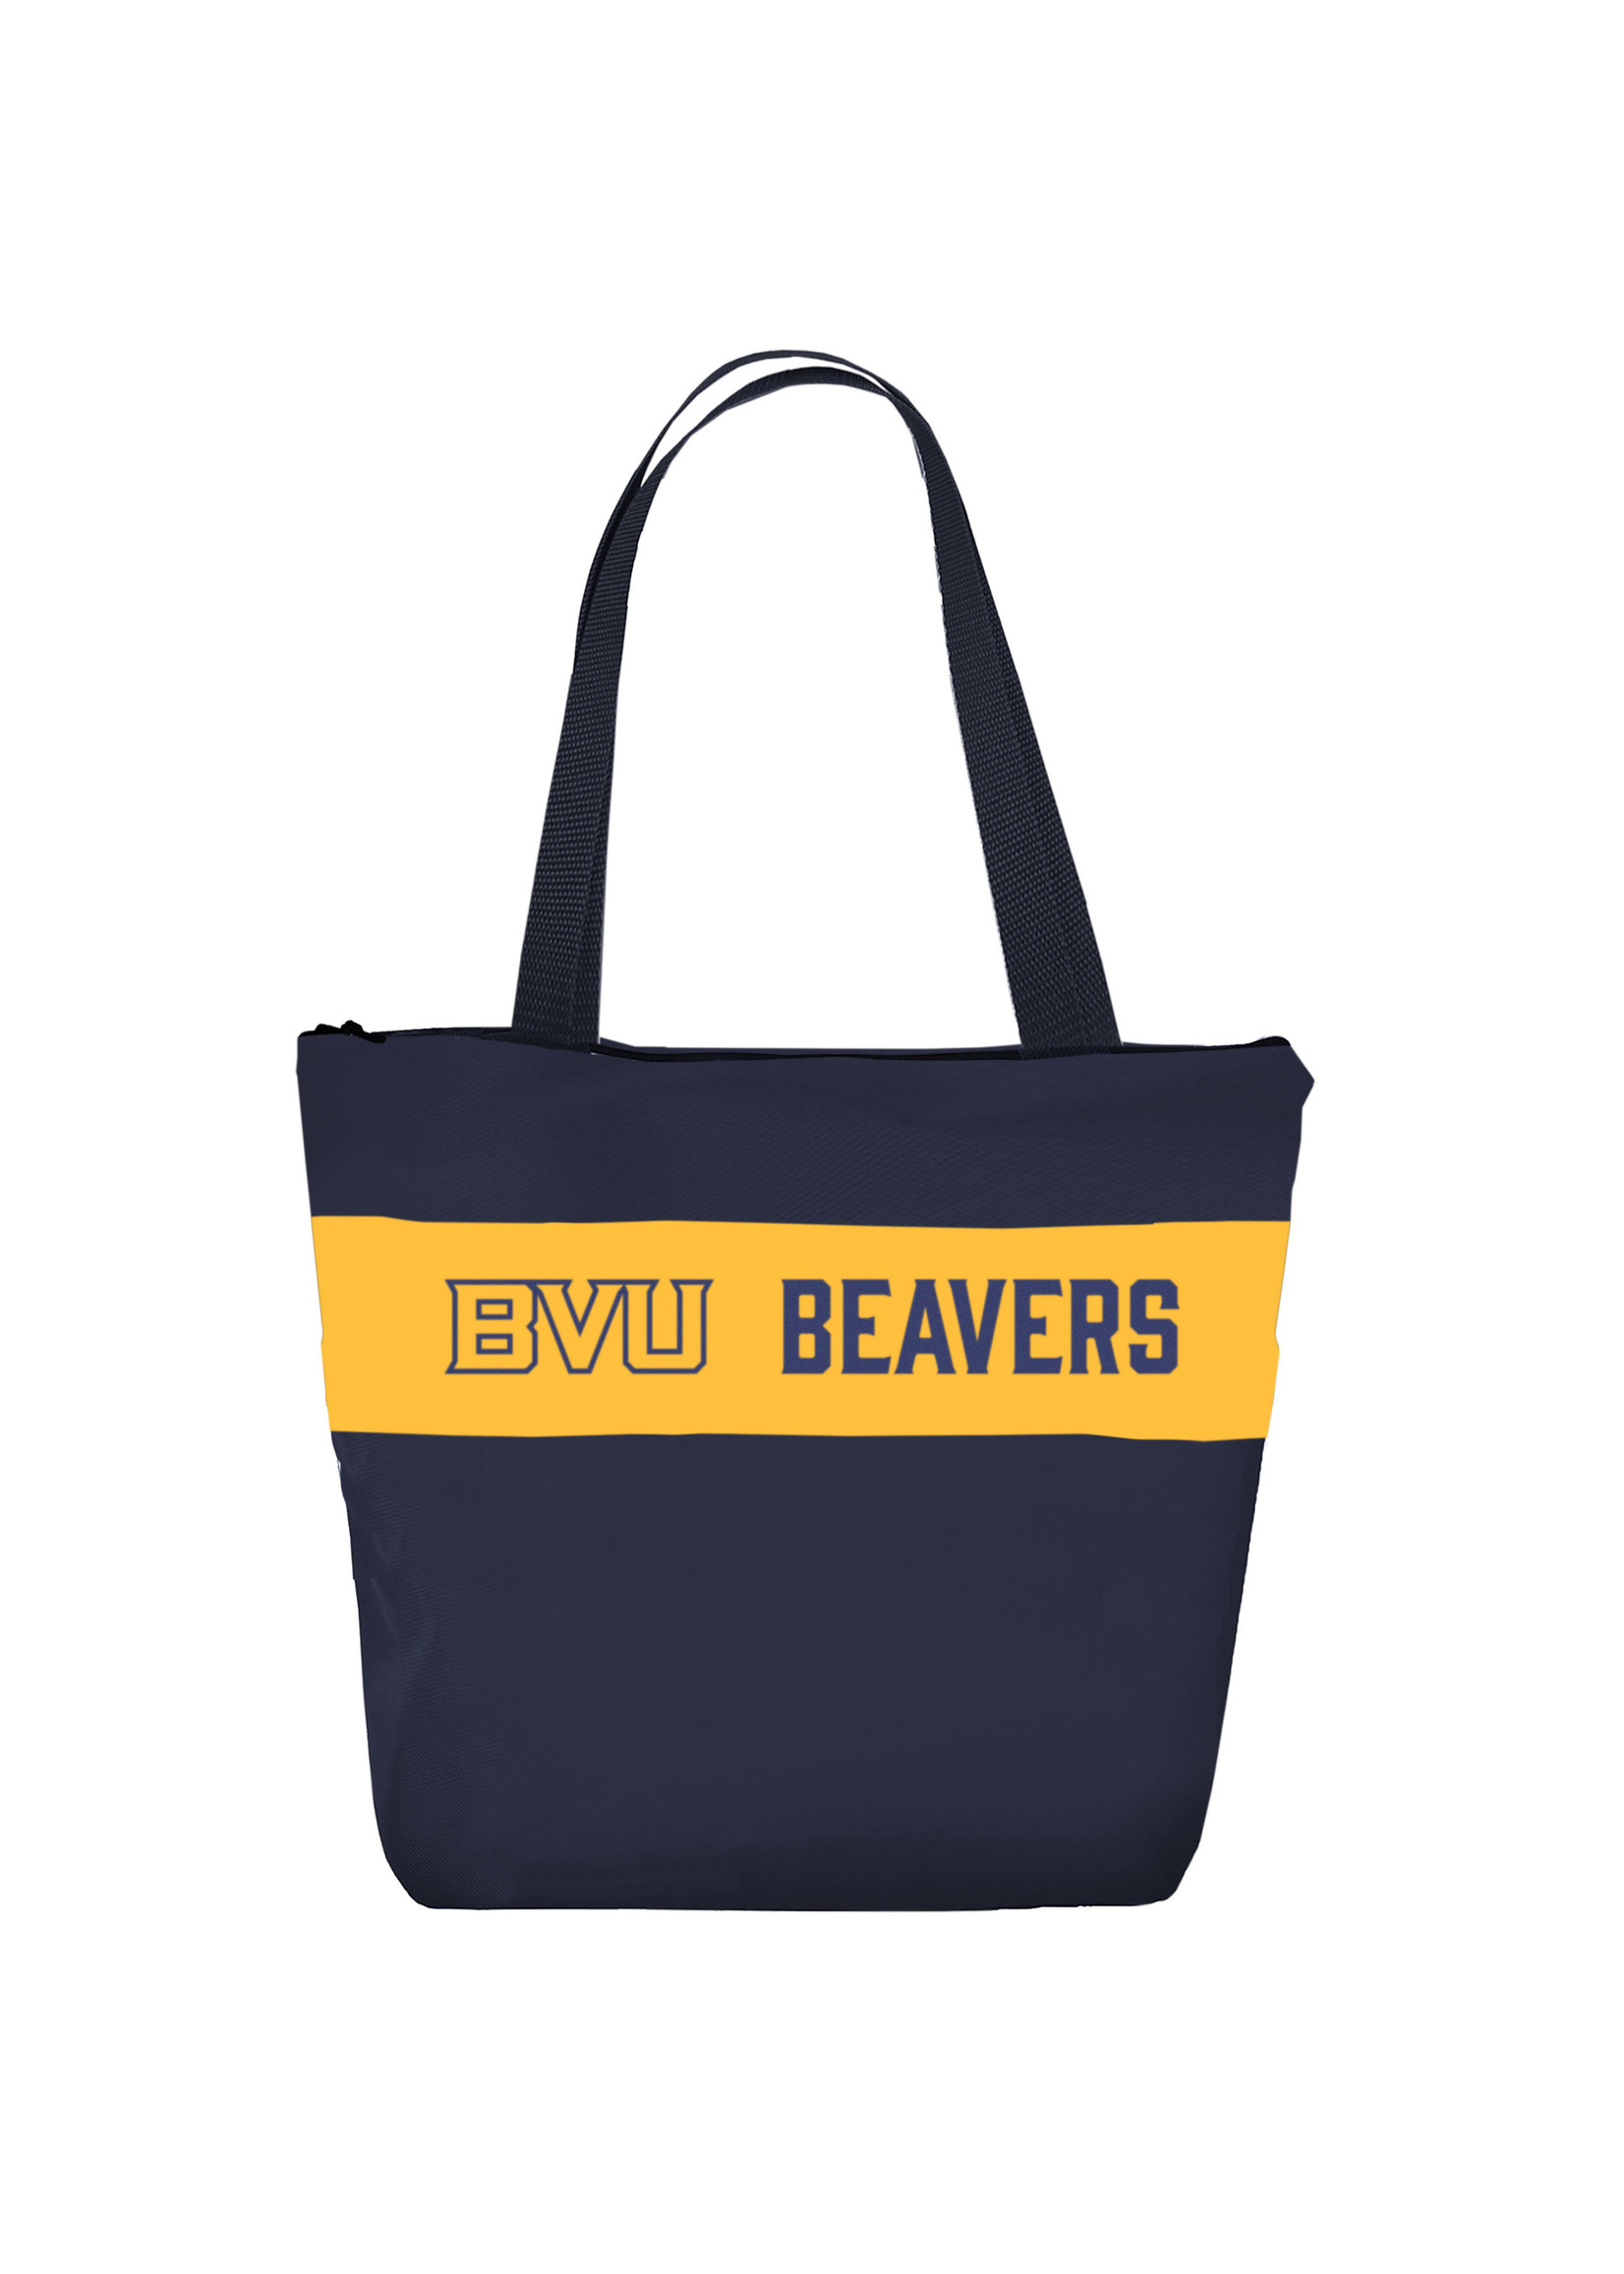 Spirit Products Ltd BVU Beavers Tote Bag 18W x 15H x 5 1/2D